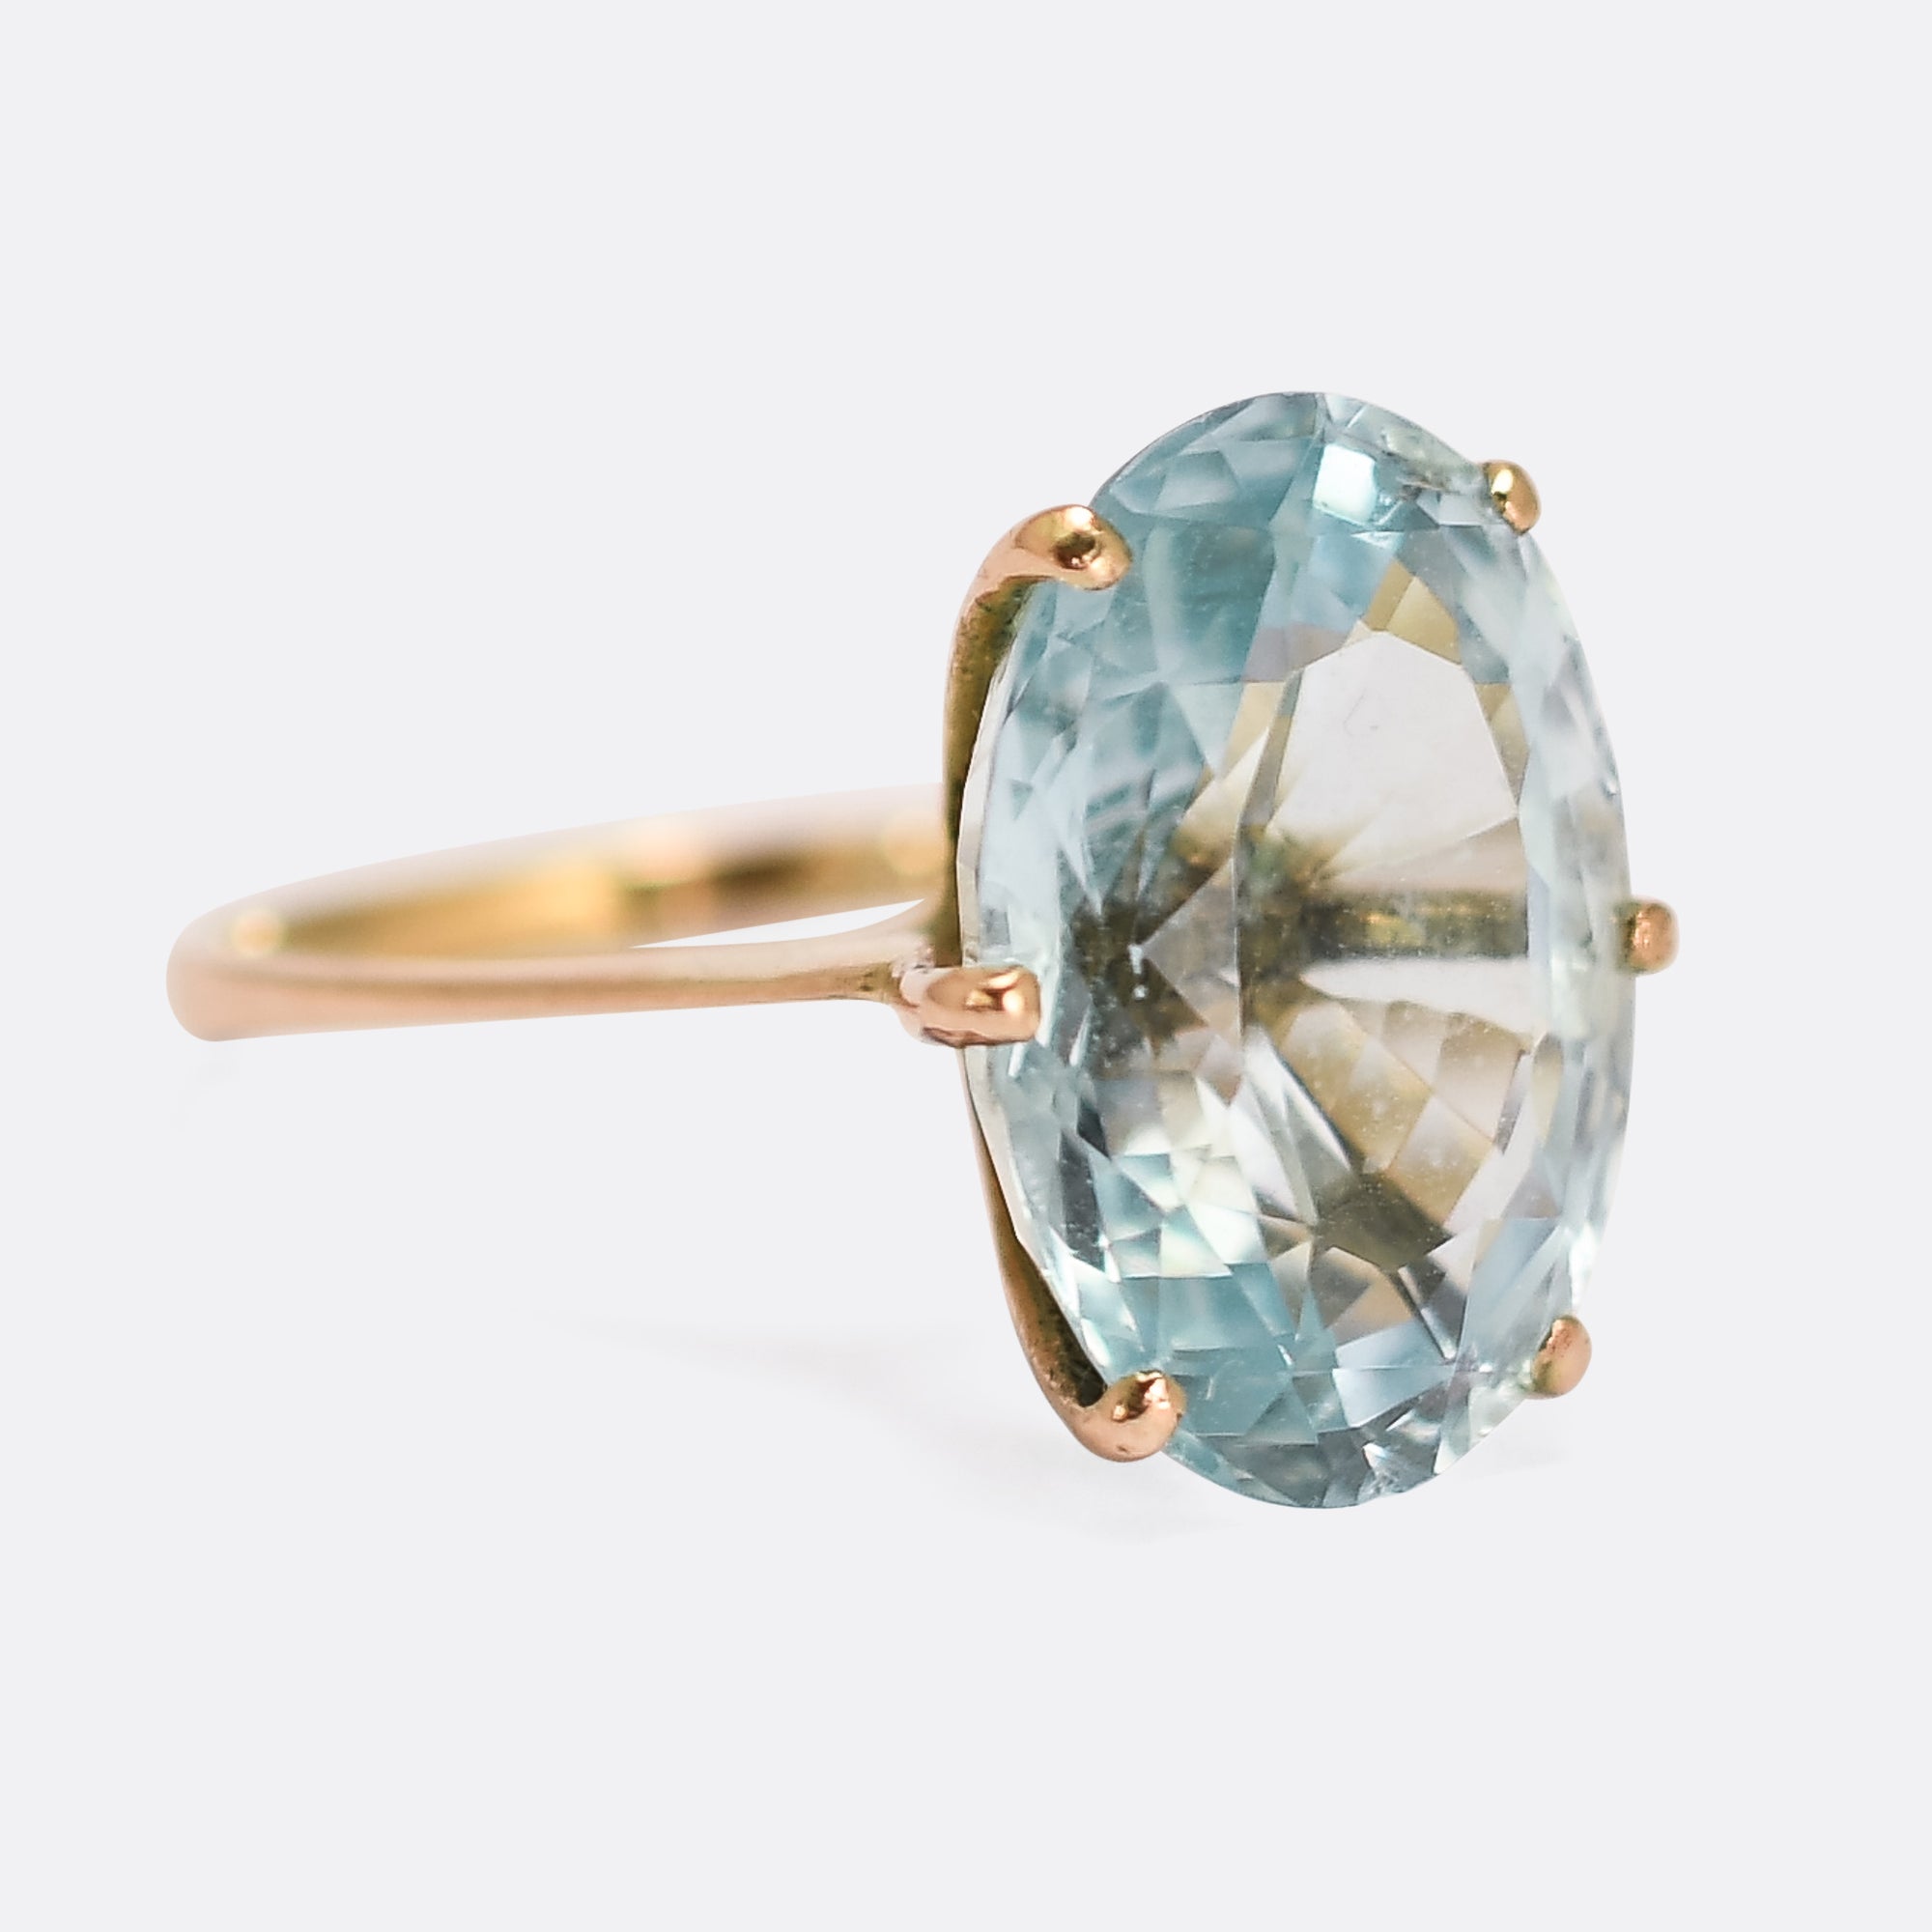 Buy Aquamarine Engagement Ring, Emerald Cut Aquamarine & Diamond Ring,  Large Blue Stone Ring, 14k Gold Ring Online in India - Etsy